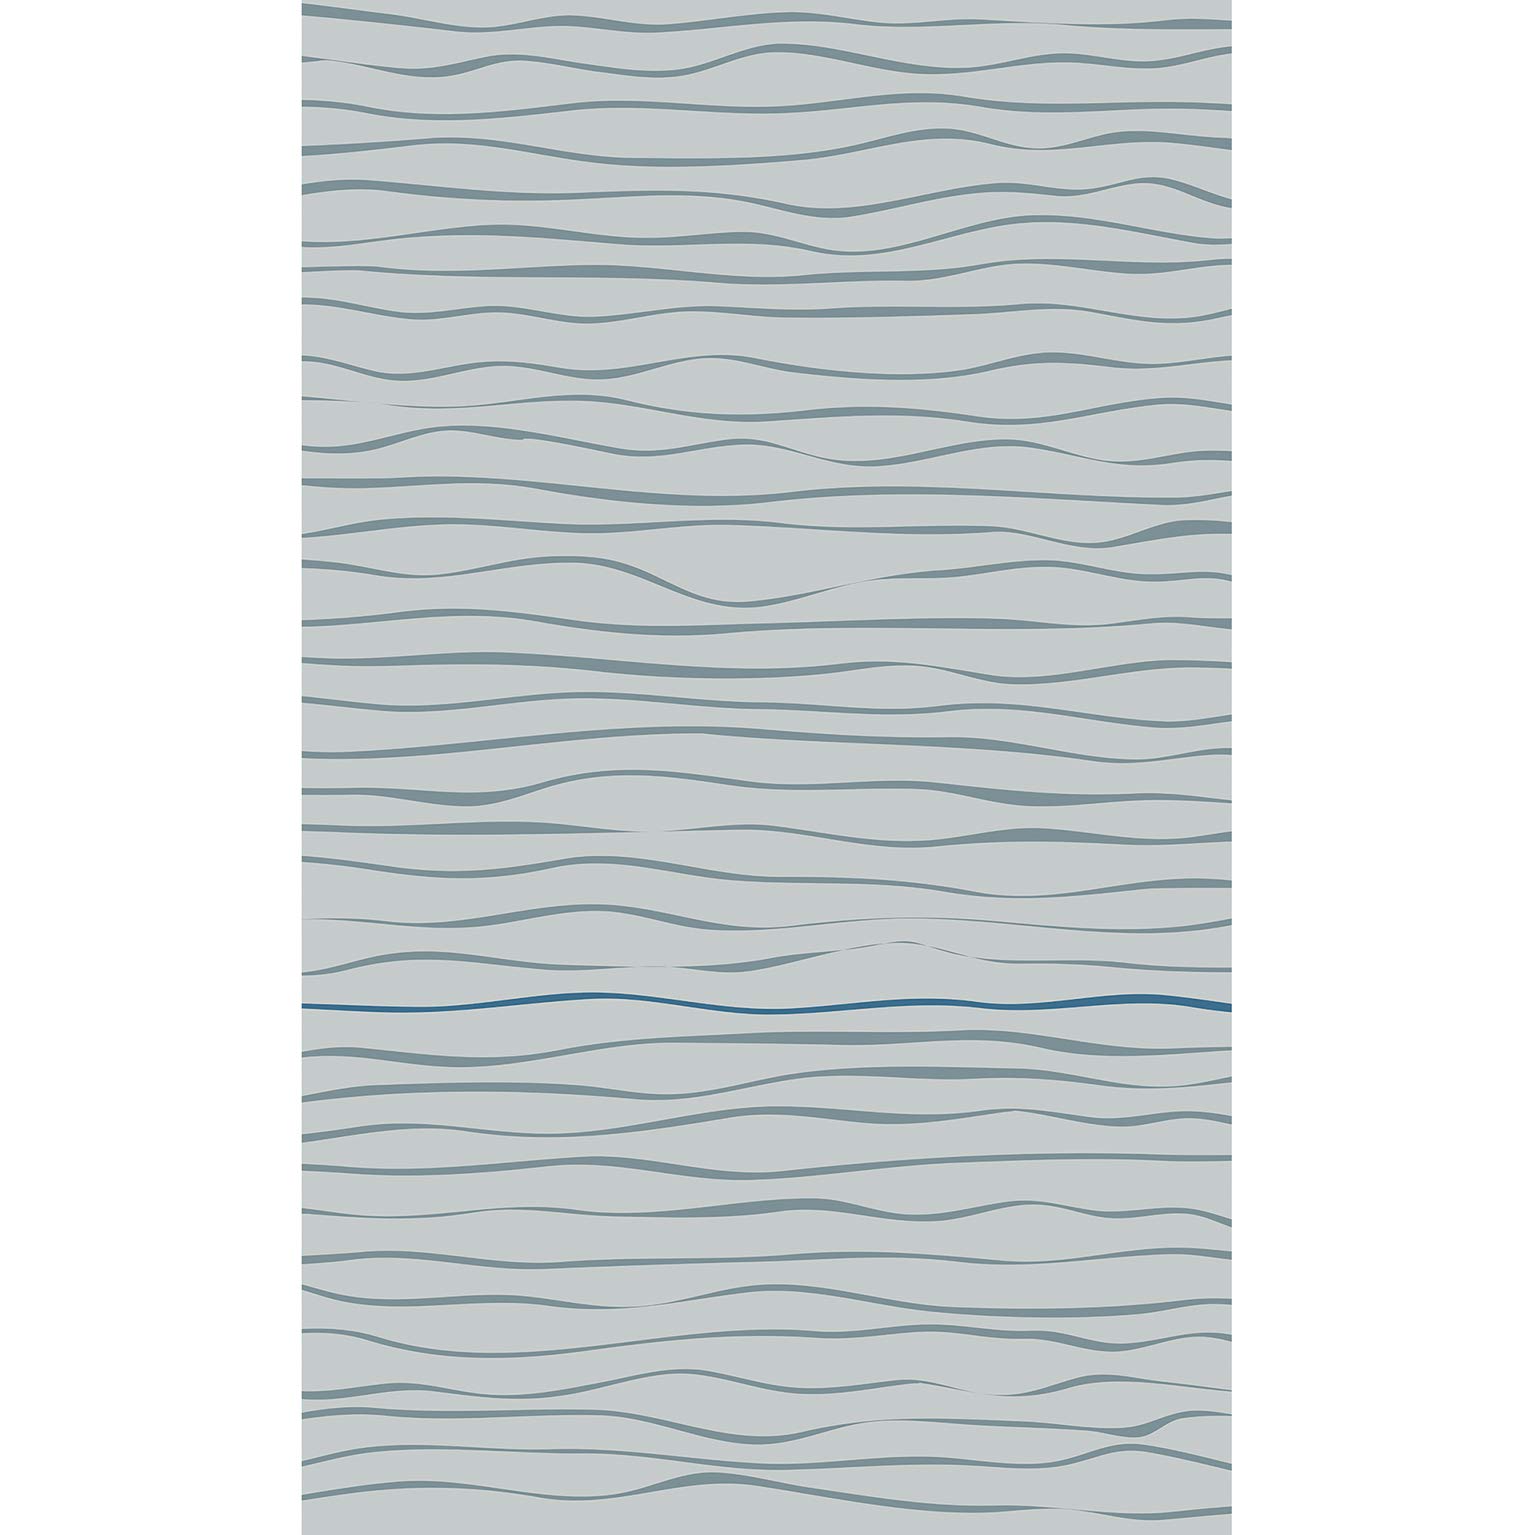 Plage Panorama-Tapete-Blaue HORIZONTALE Wellen, 1,5X 2,5m